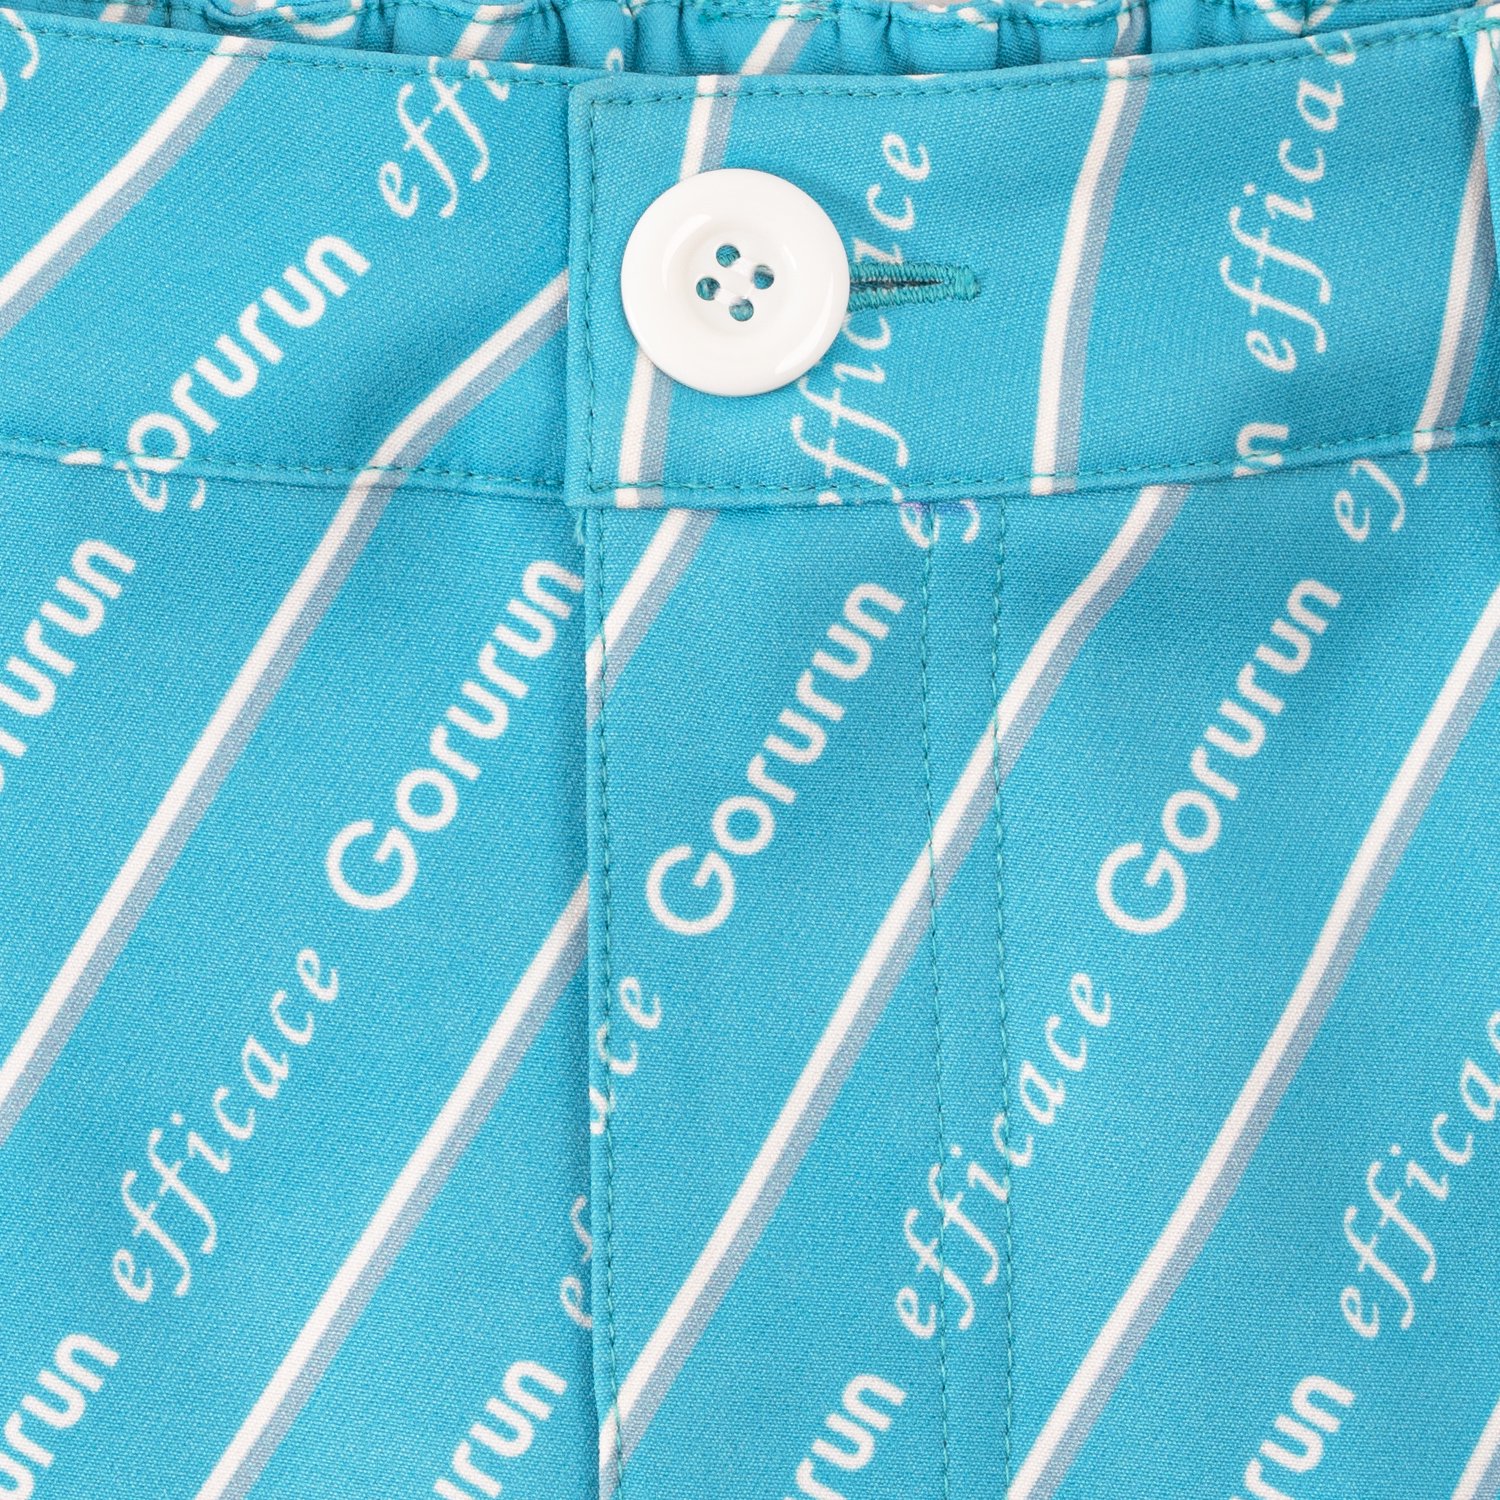 【レディース】Gorurun x efficace ブルーデライト スカート / ごるらんブルー | Gorurun ごるらん